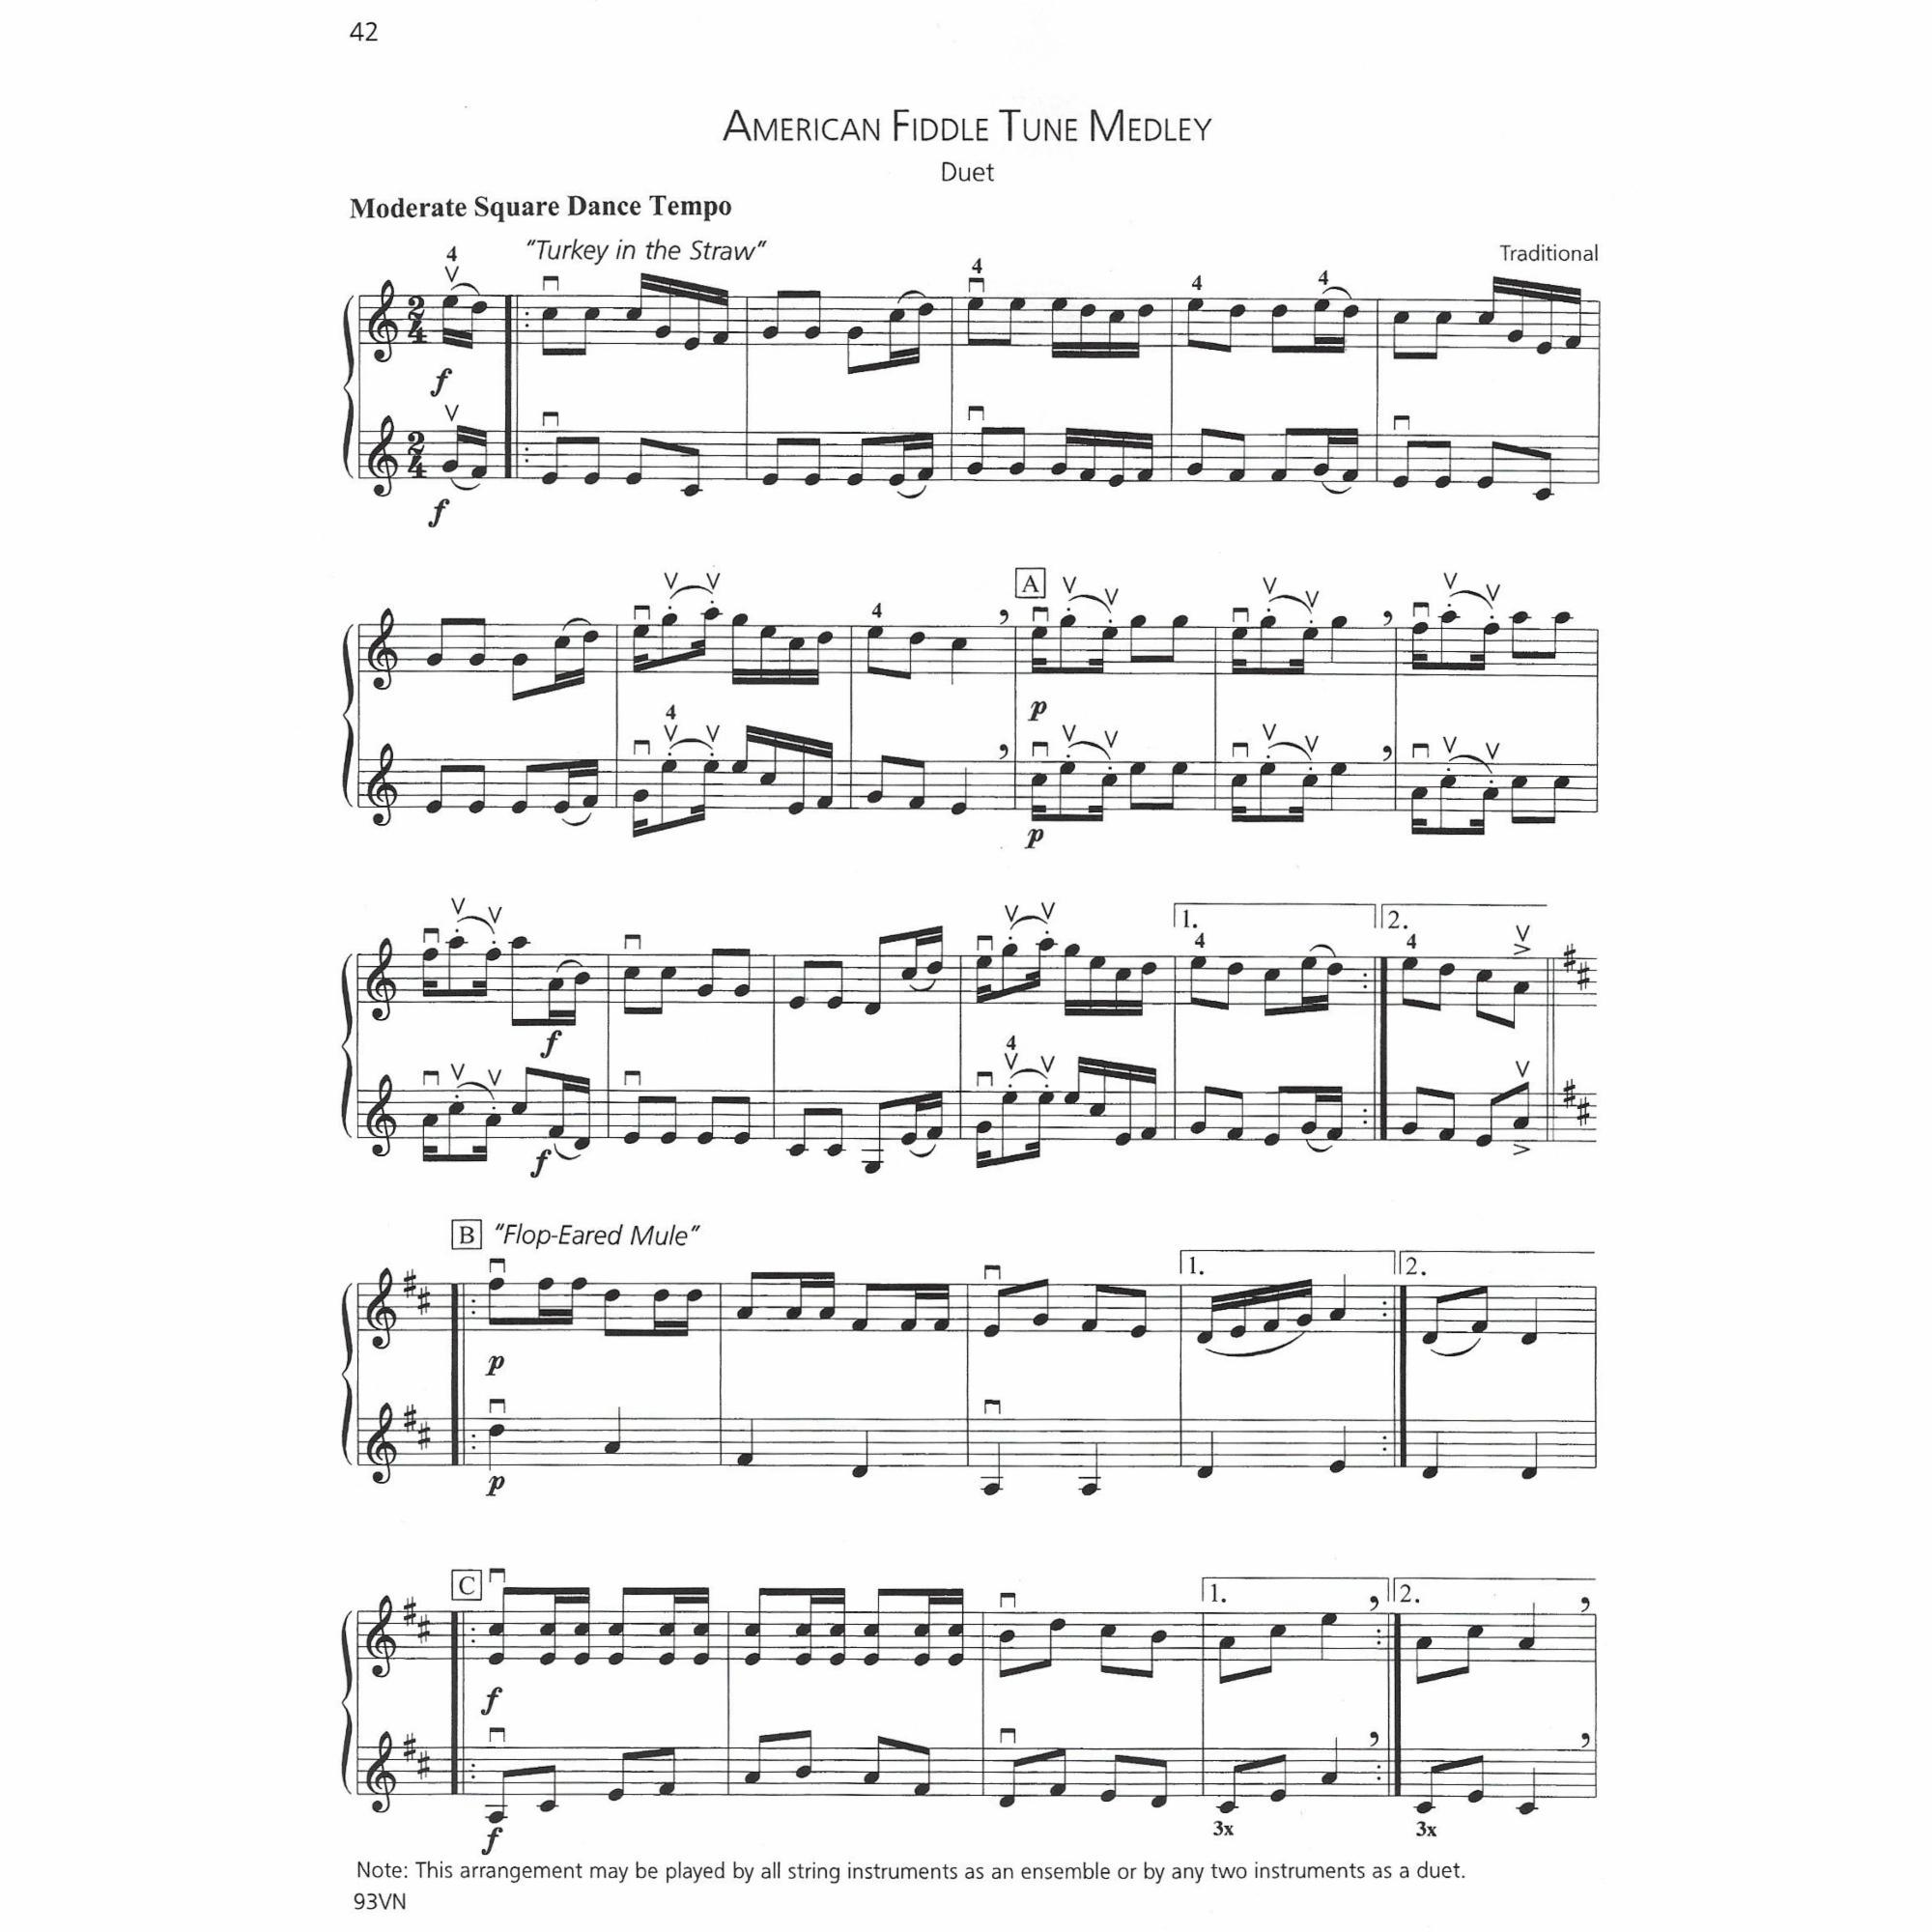 Sample: Violin (Pg. 42)